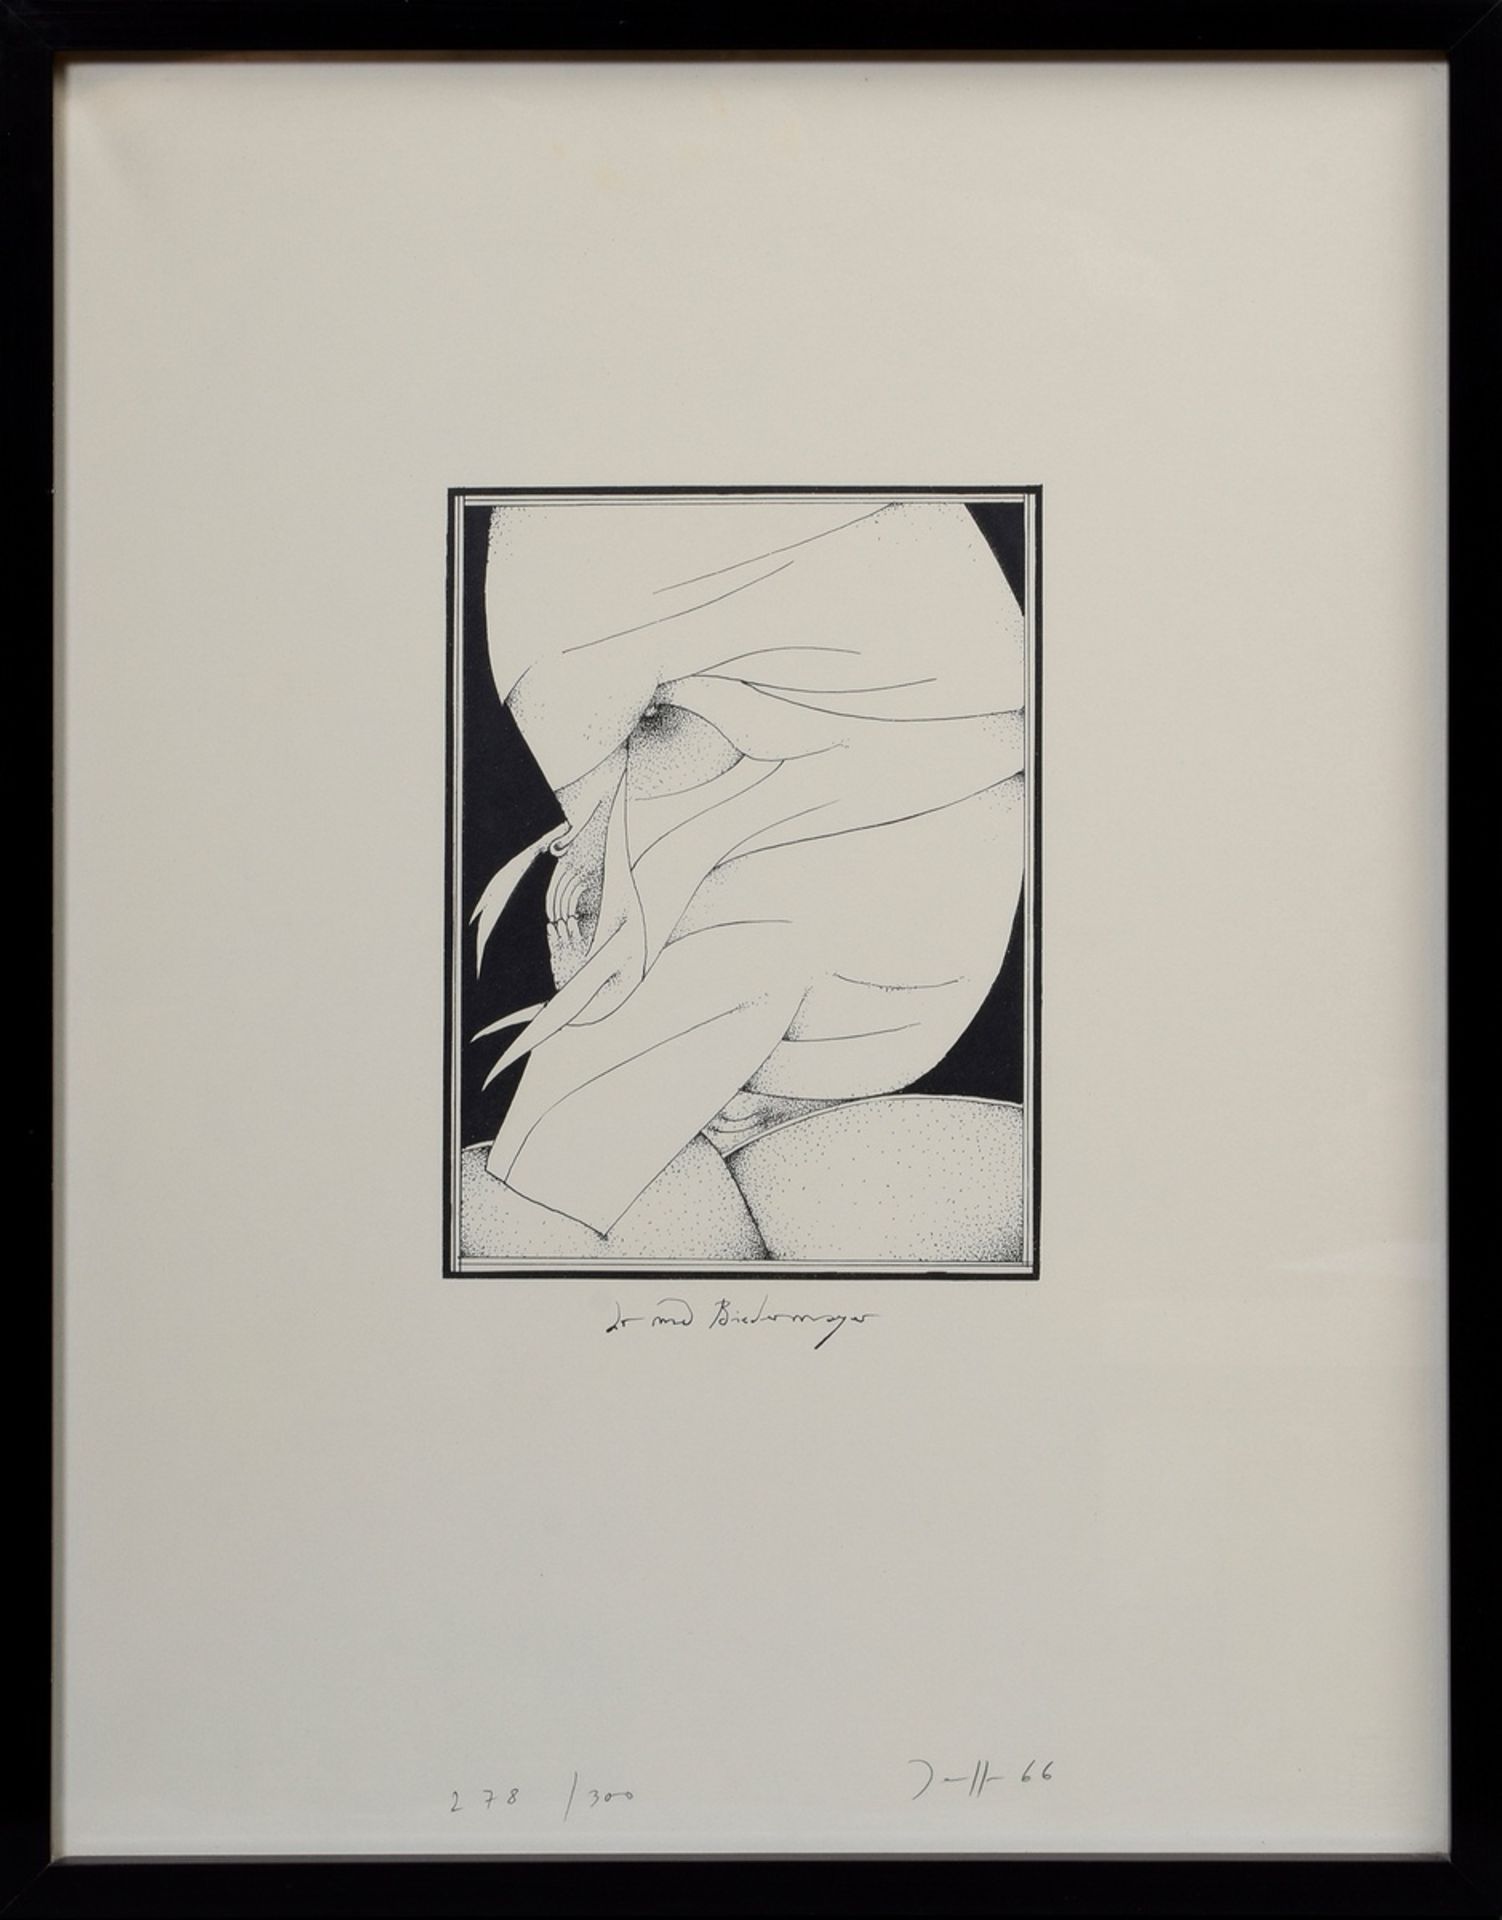 Janssen, Horst (1929-1995) "Dr. med. Biedermeyer" 1966, lithograph, 278/300, b. sign./num./dat., PM - Image 2 of 3